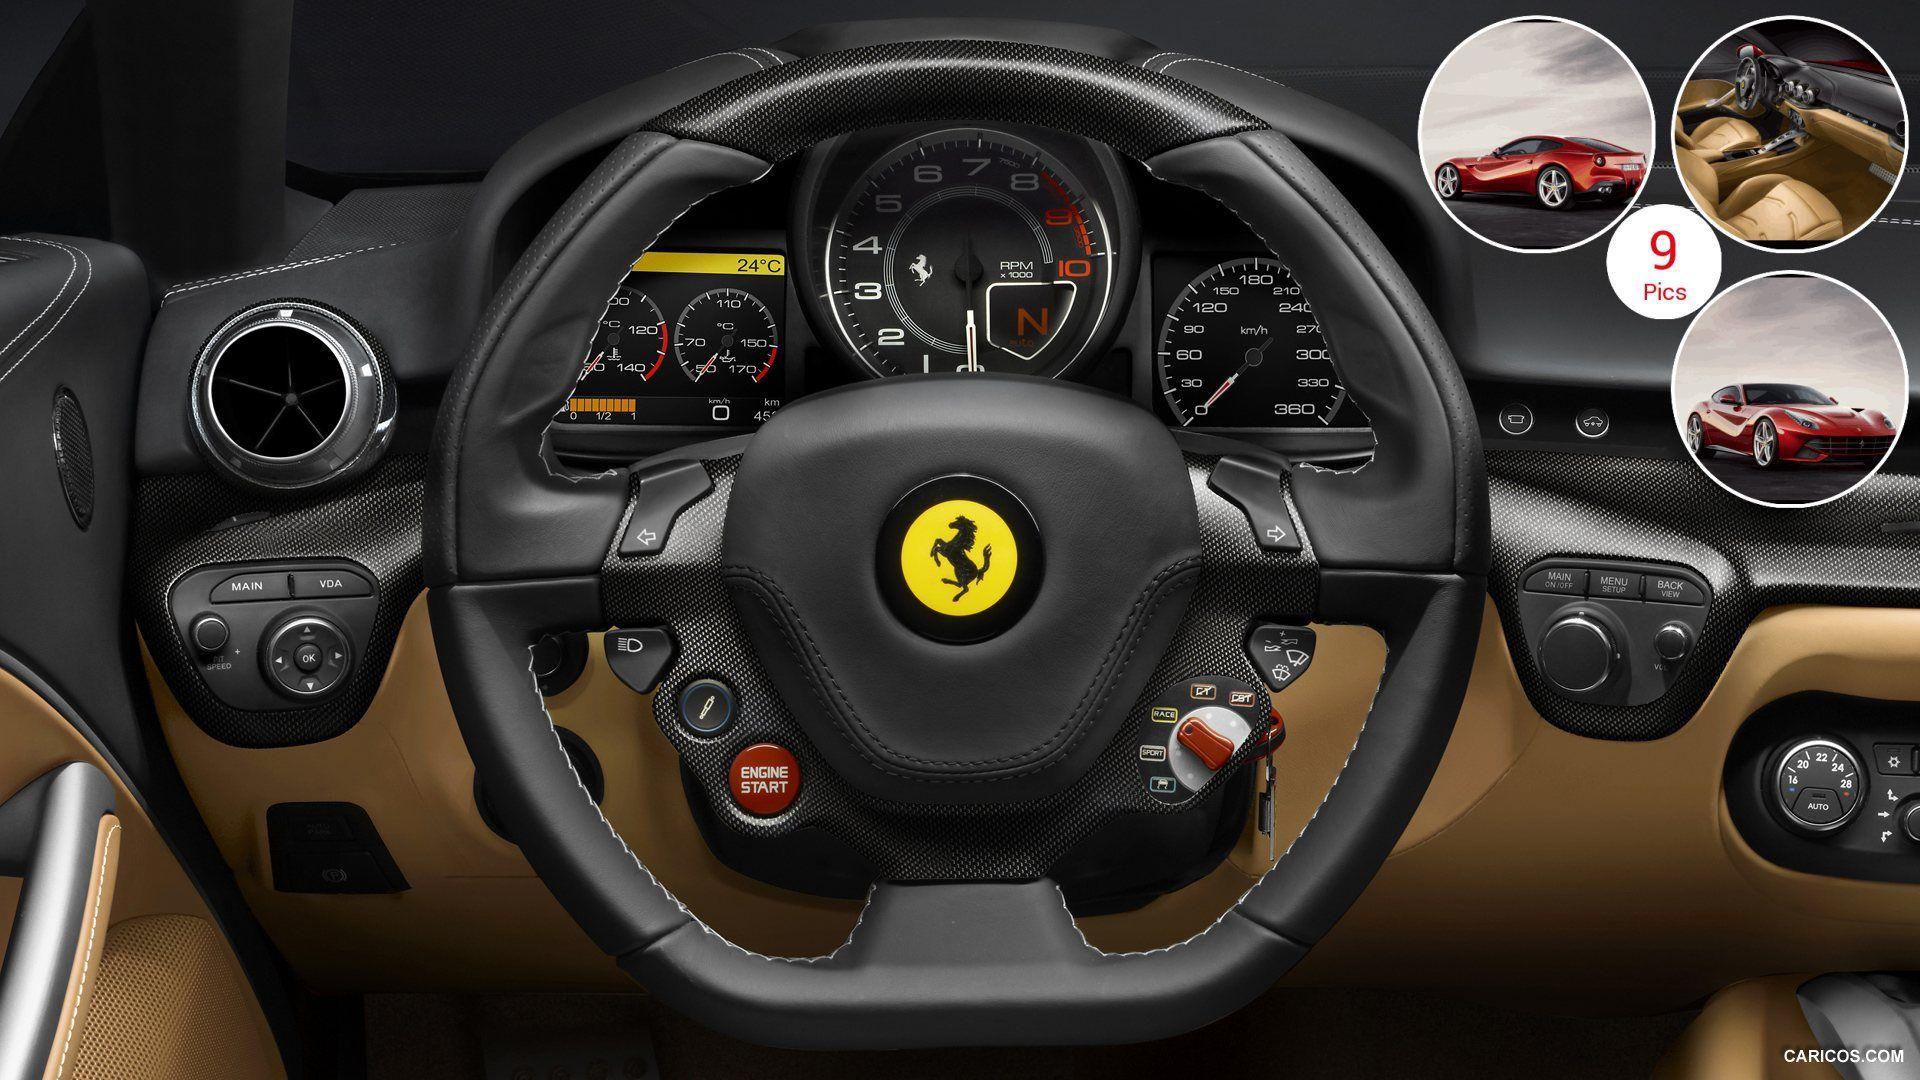 Ferrari F12berlinetta. HD Wallpaper